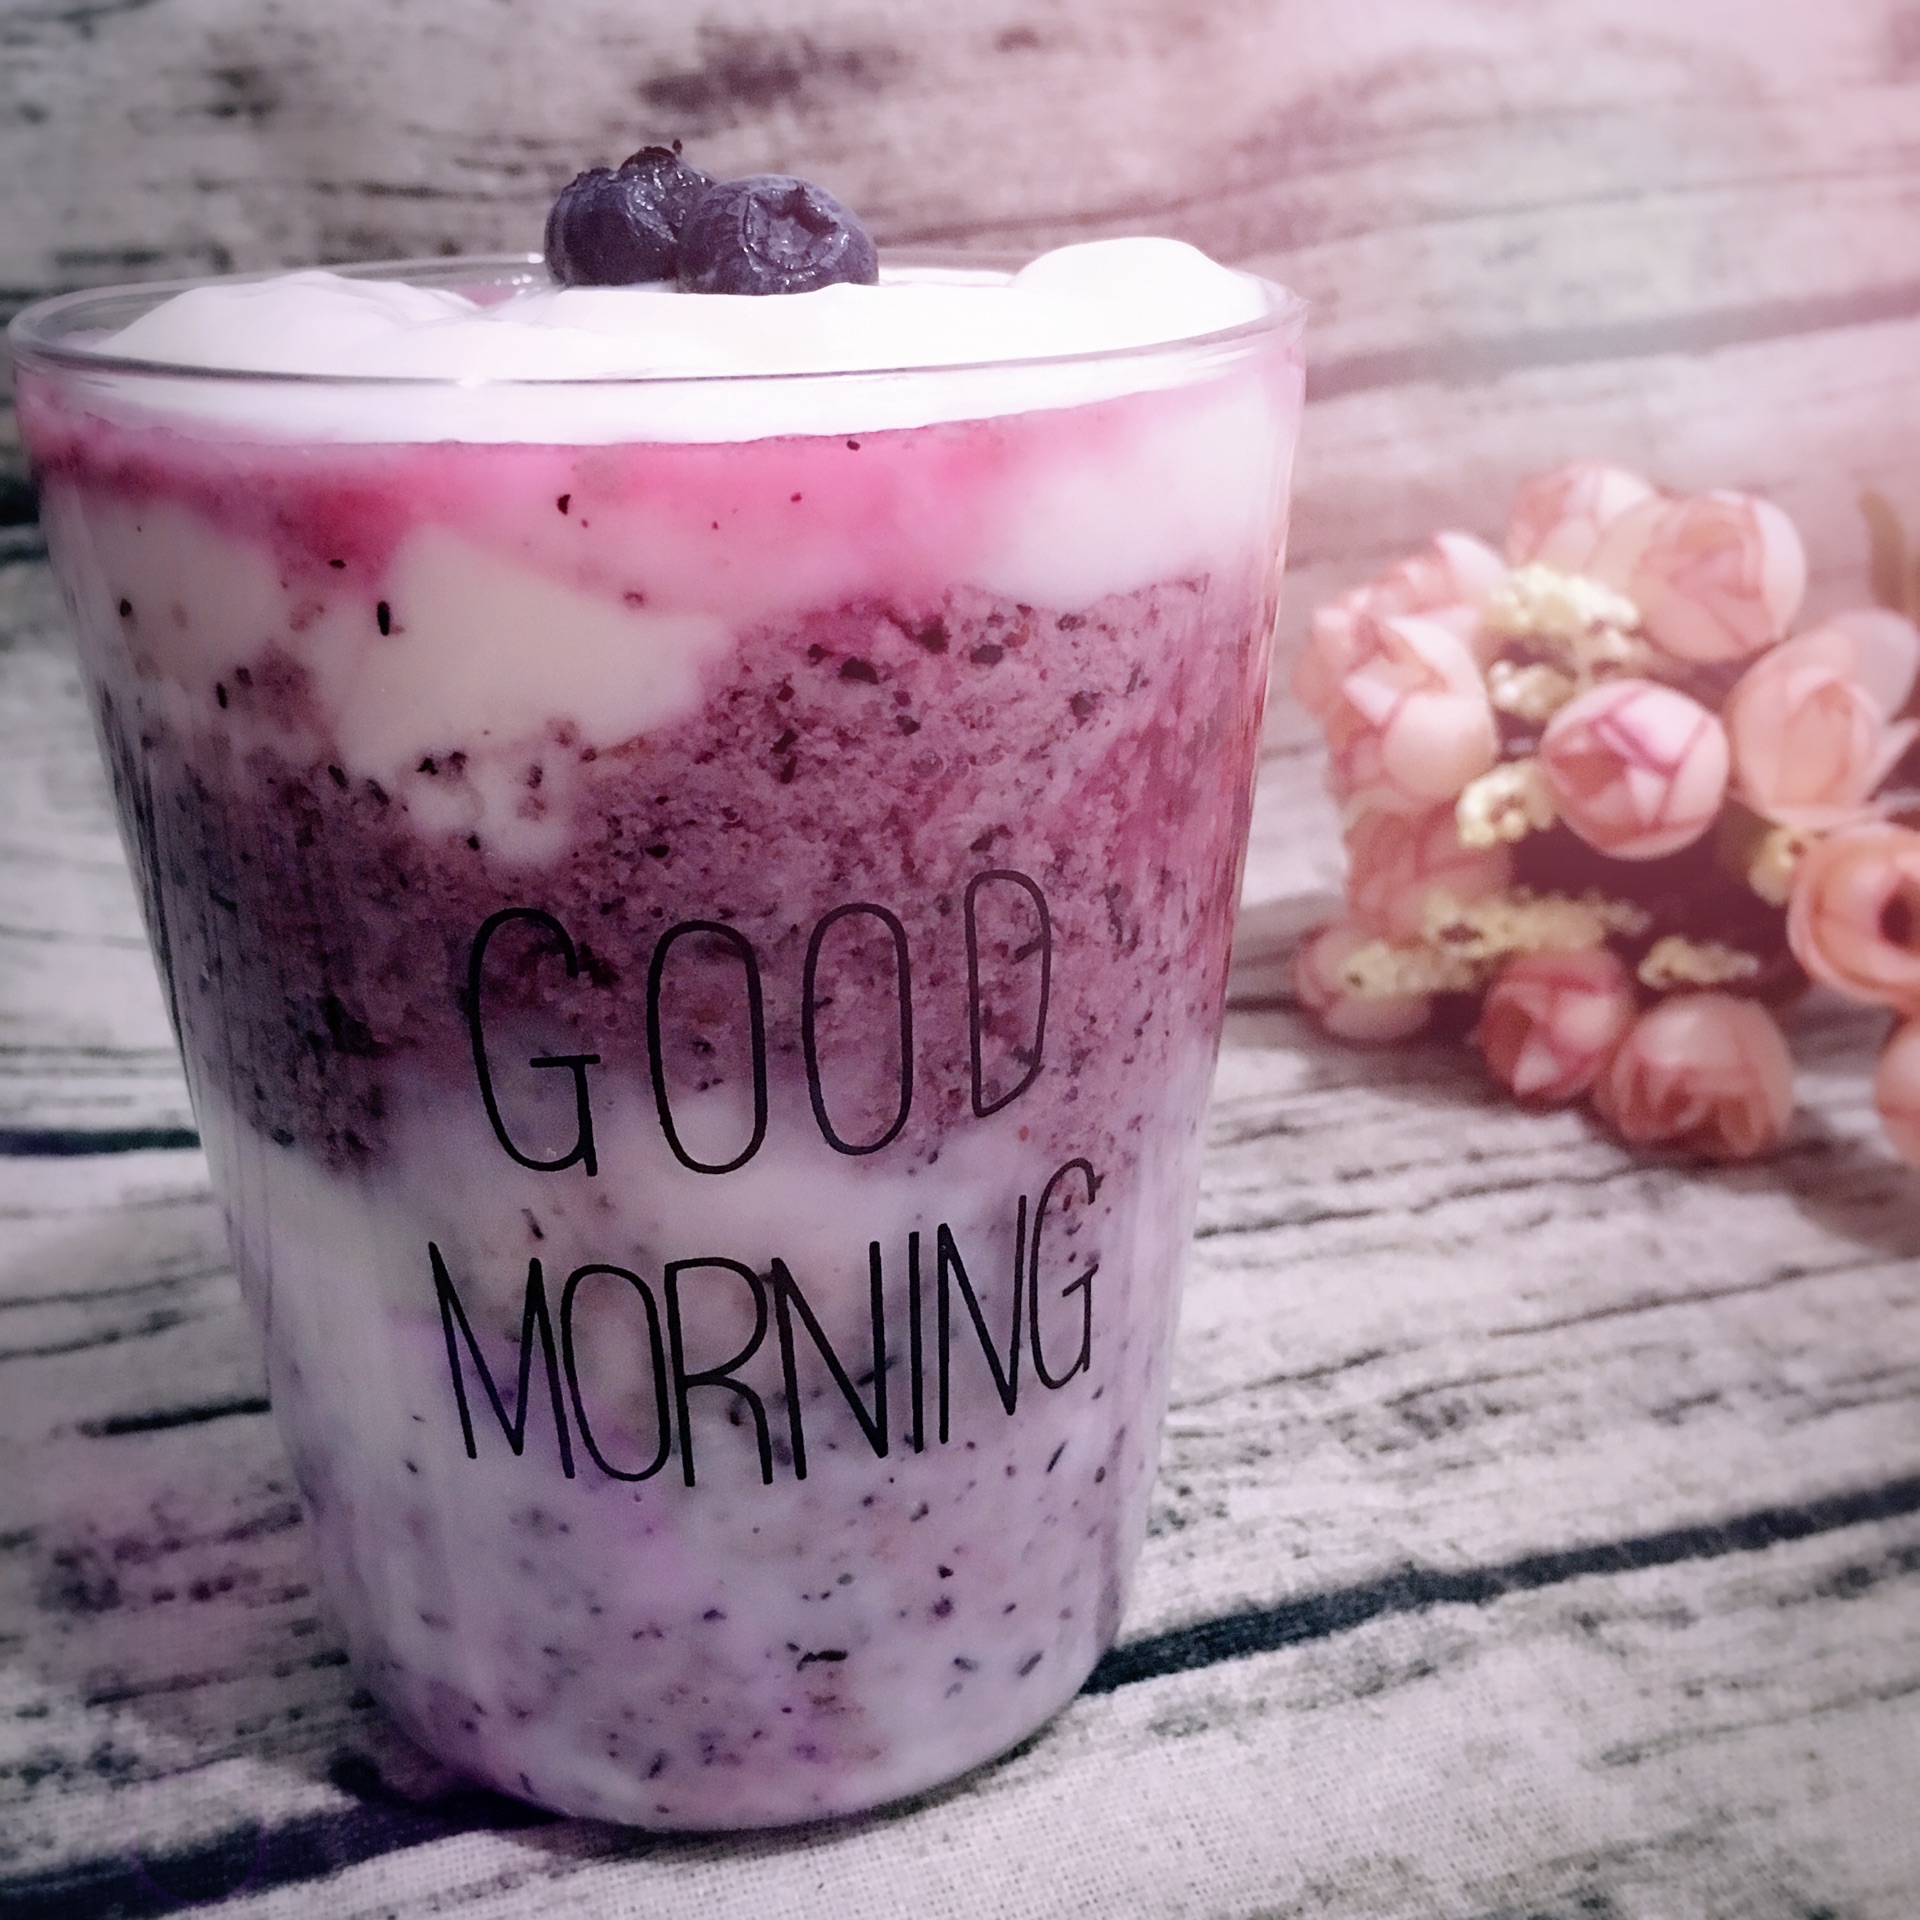 蓝莓酸奶#爱的暖胃季-美的智能破壁料理机